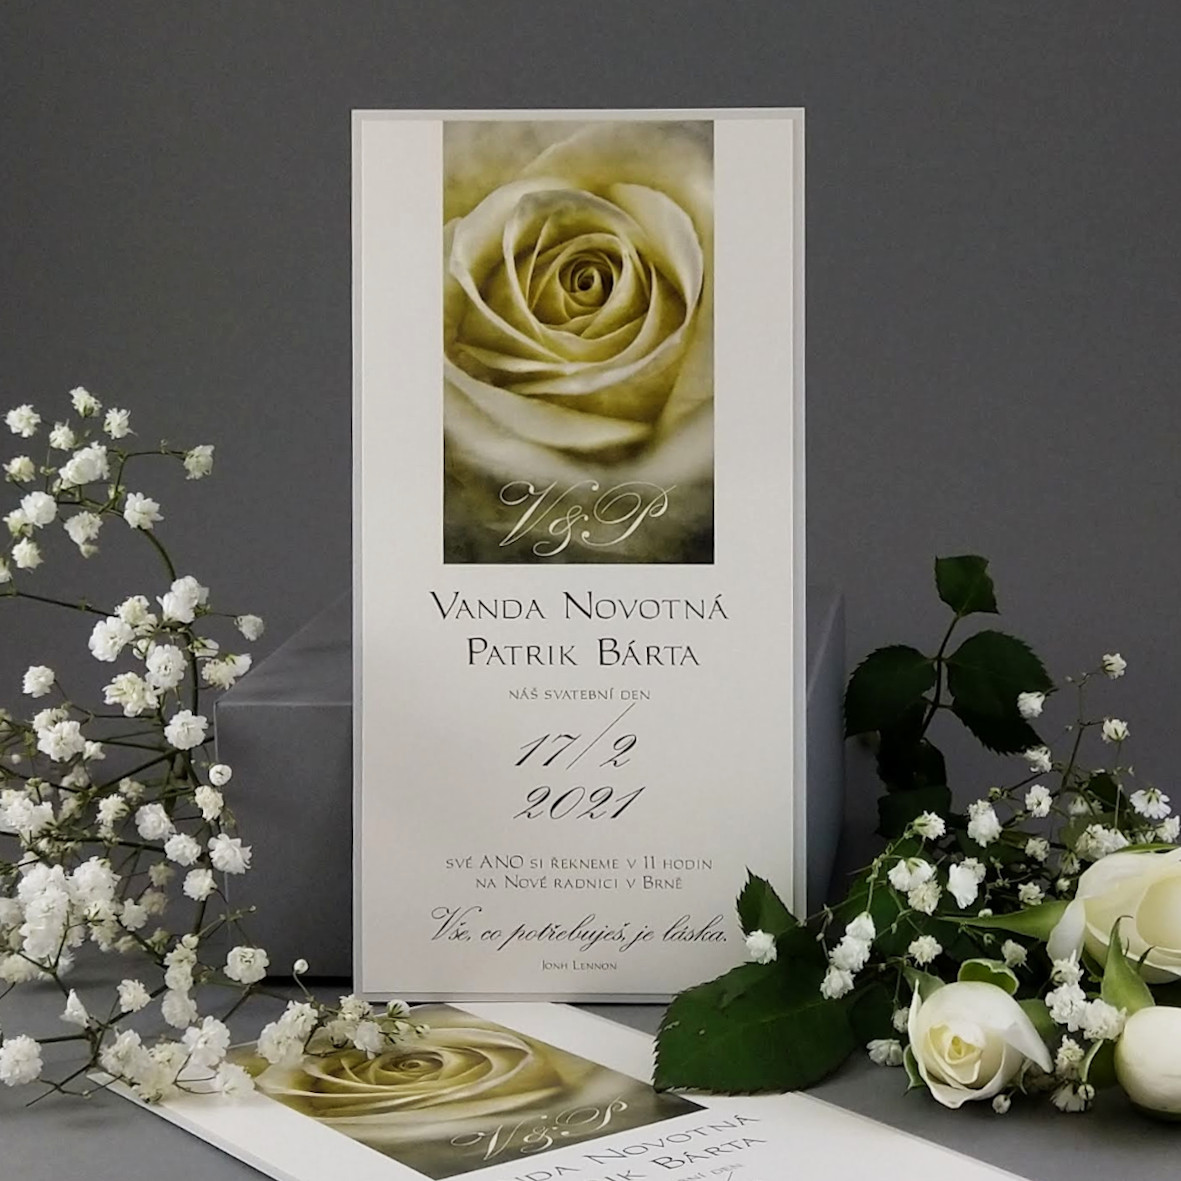 Svatební oznámení –  dvouvrstvá DL karta s motivem květu žluté růže, ve vintage stylu